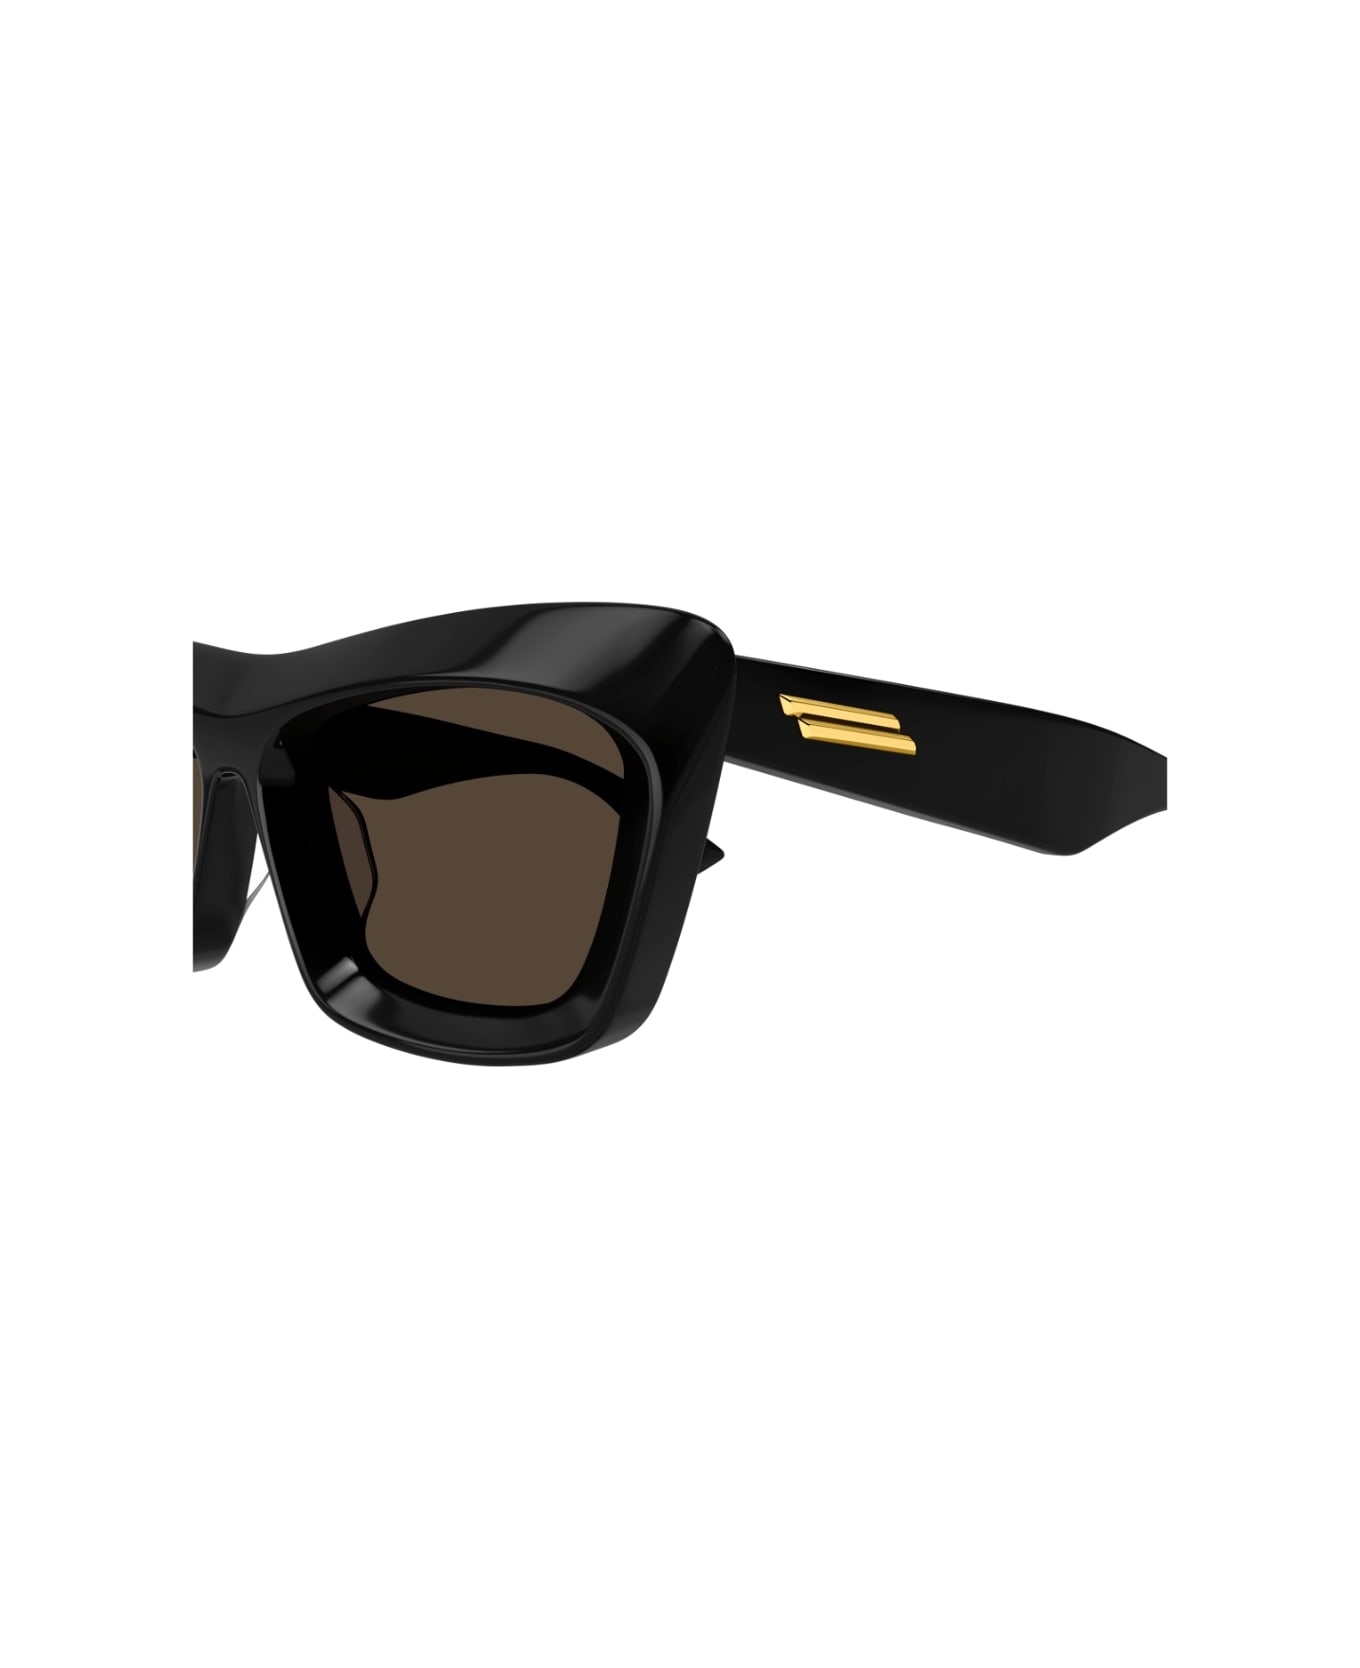 Bottega Veneta Eyewear BV1283s 001 Sunglasses